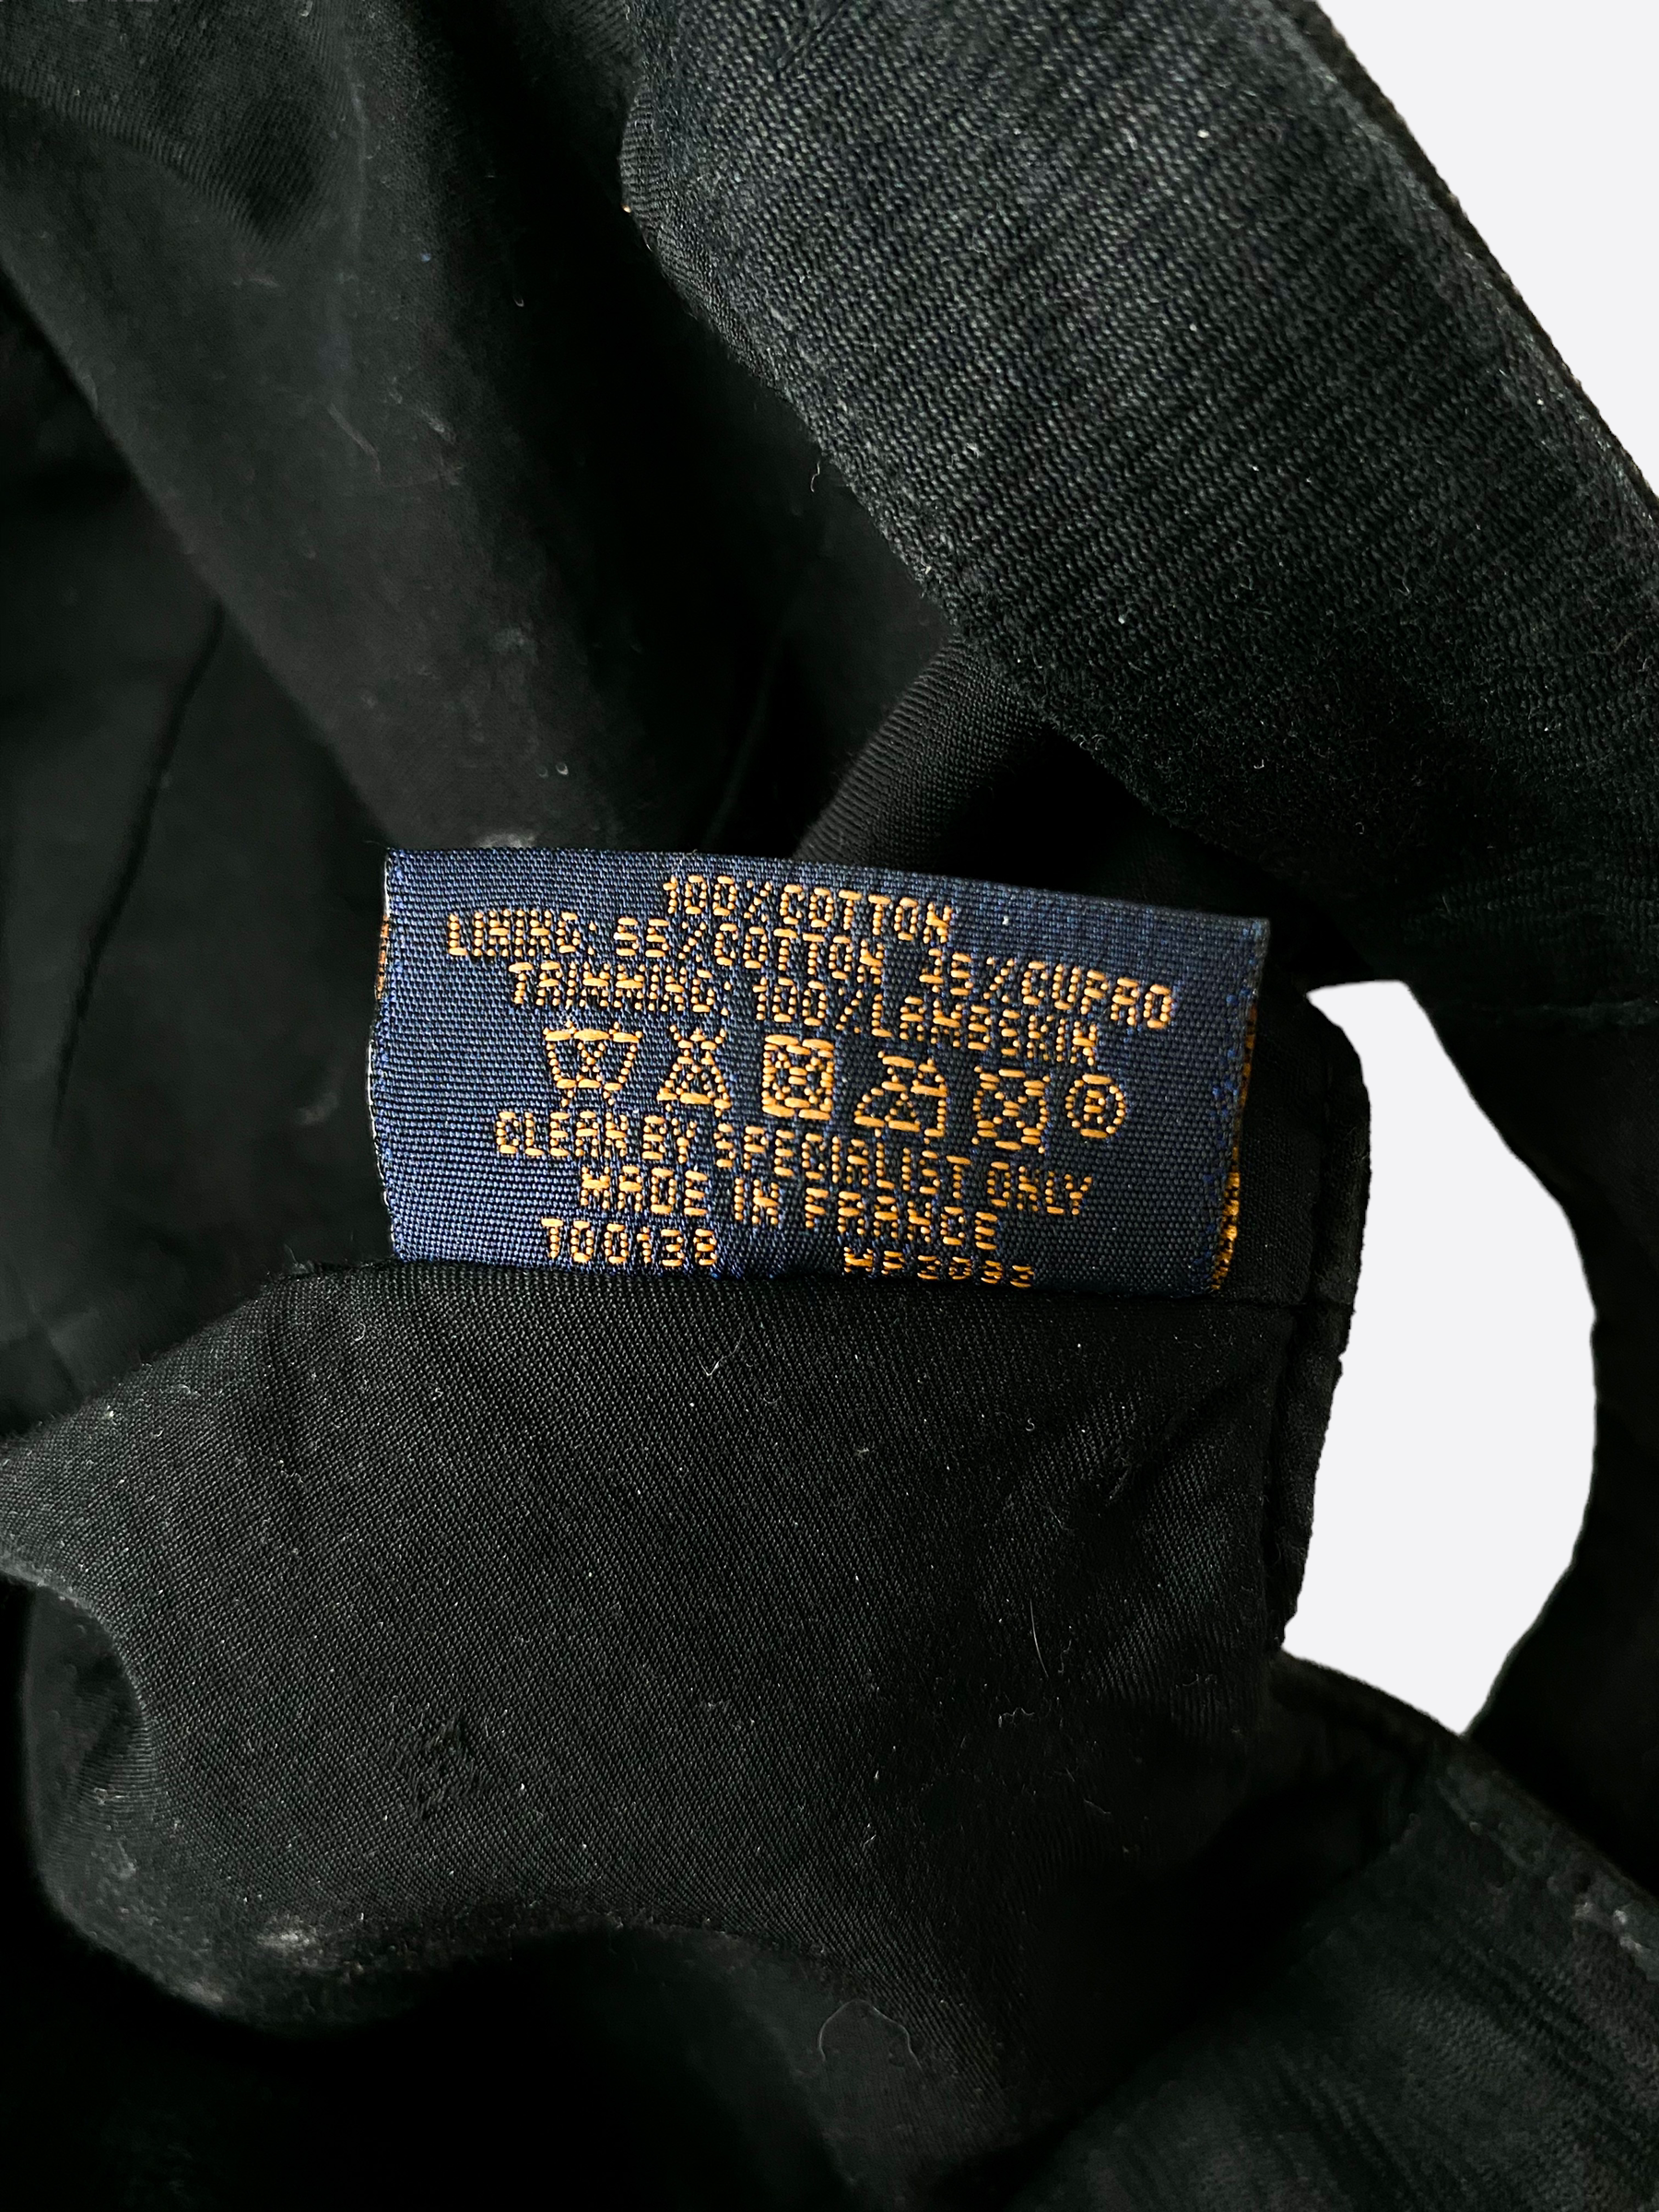 Louis Vuitton MNG Flowers Cap Black in Cotton - US